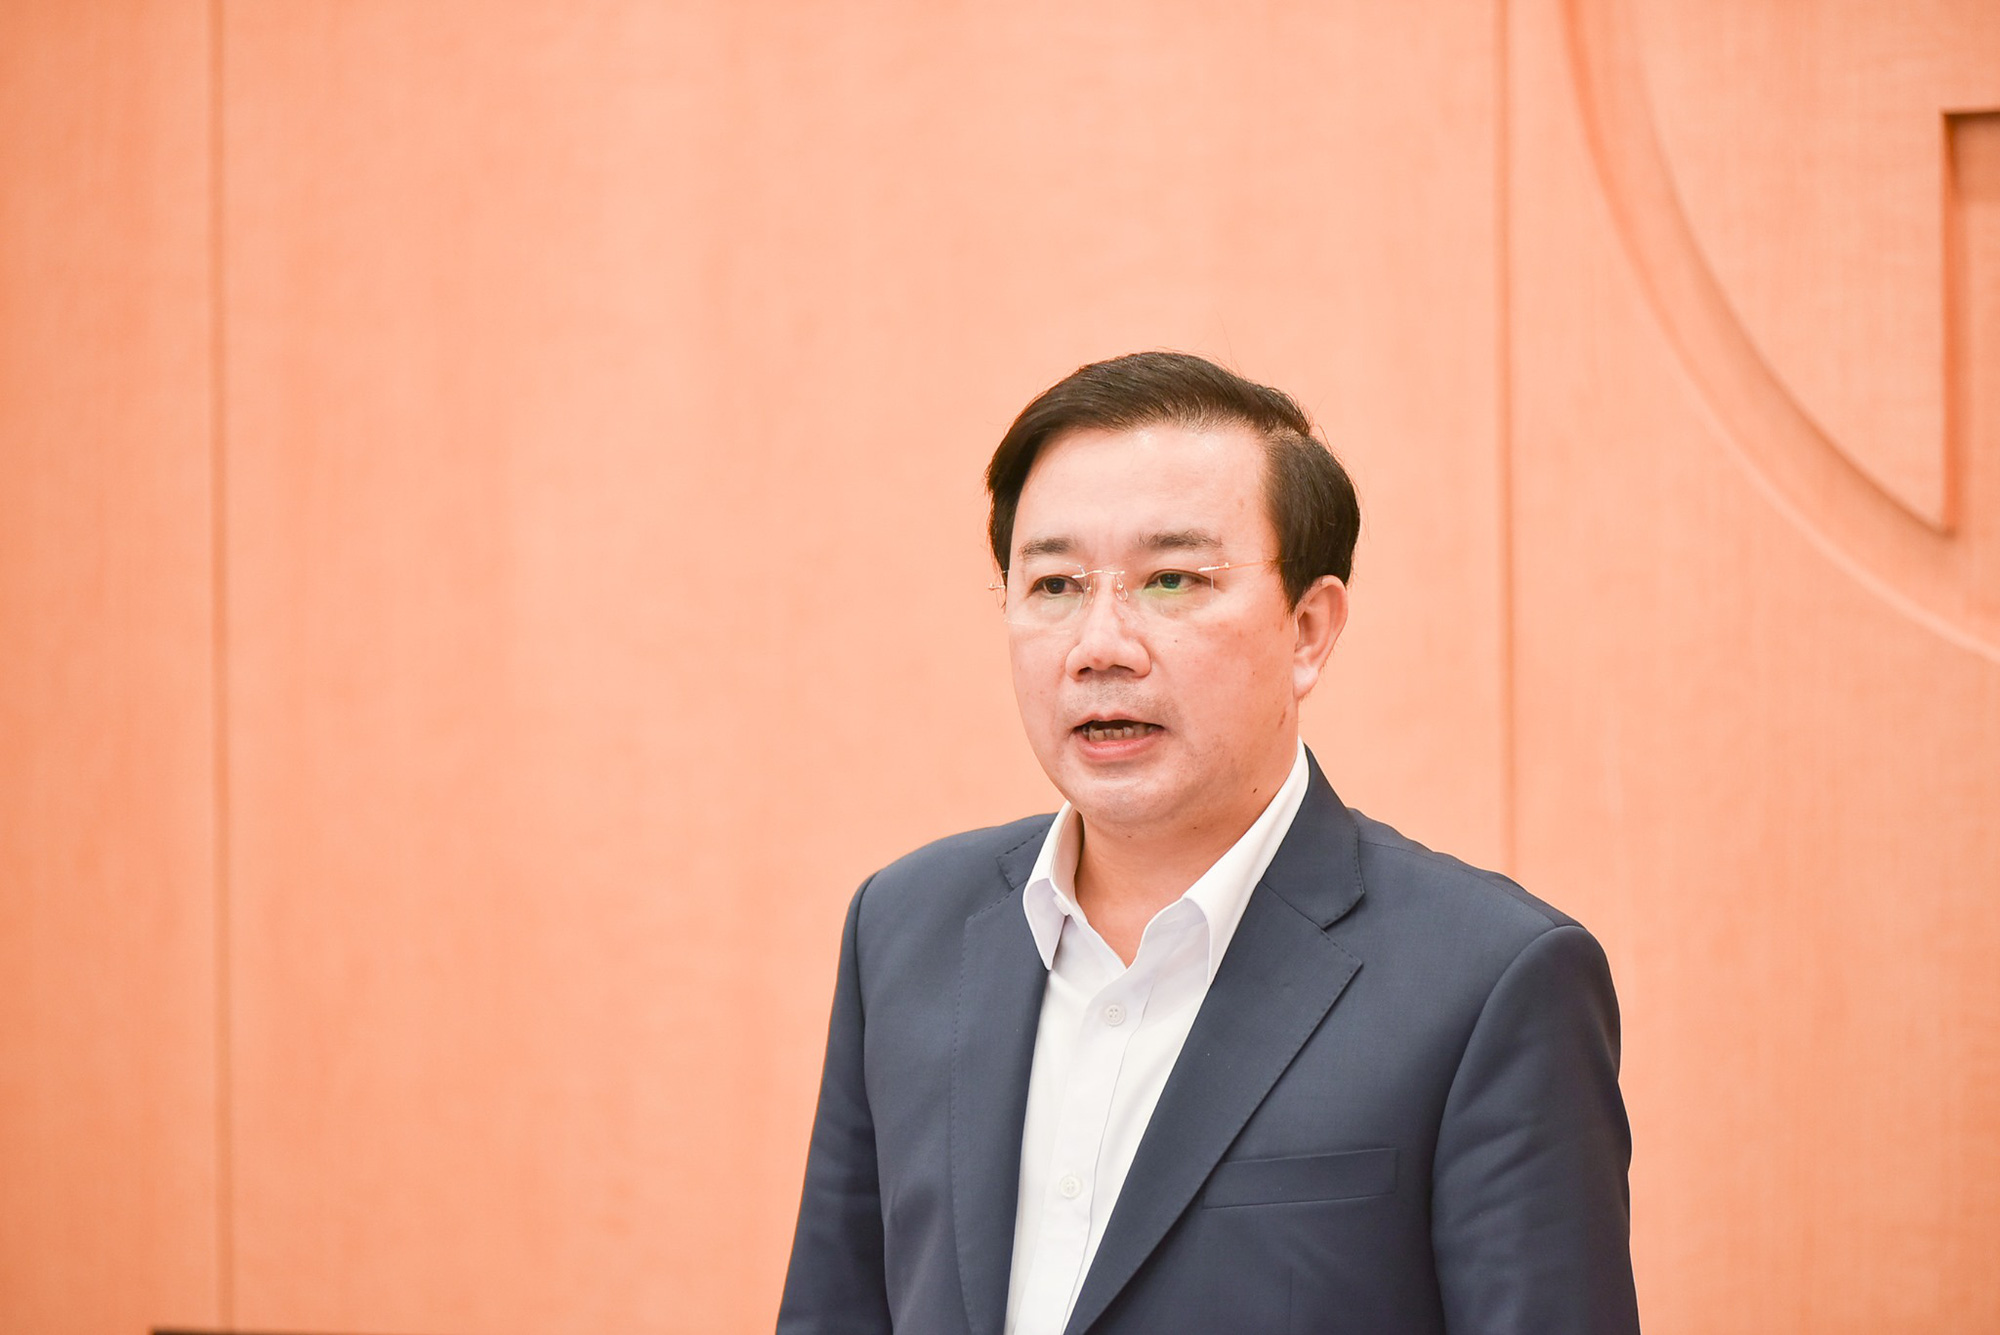 Đề nghị khai trừ ra khỏi Đảng với Phó Chủ tịch Hà Nội Chử Xuân Dũng